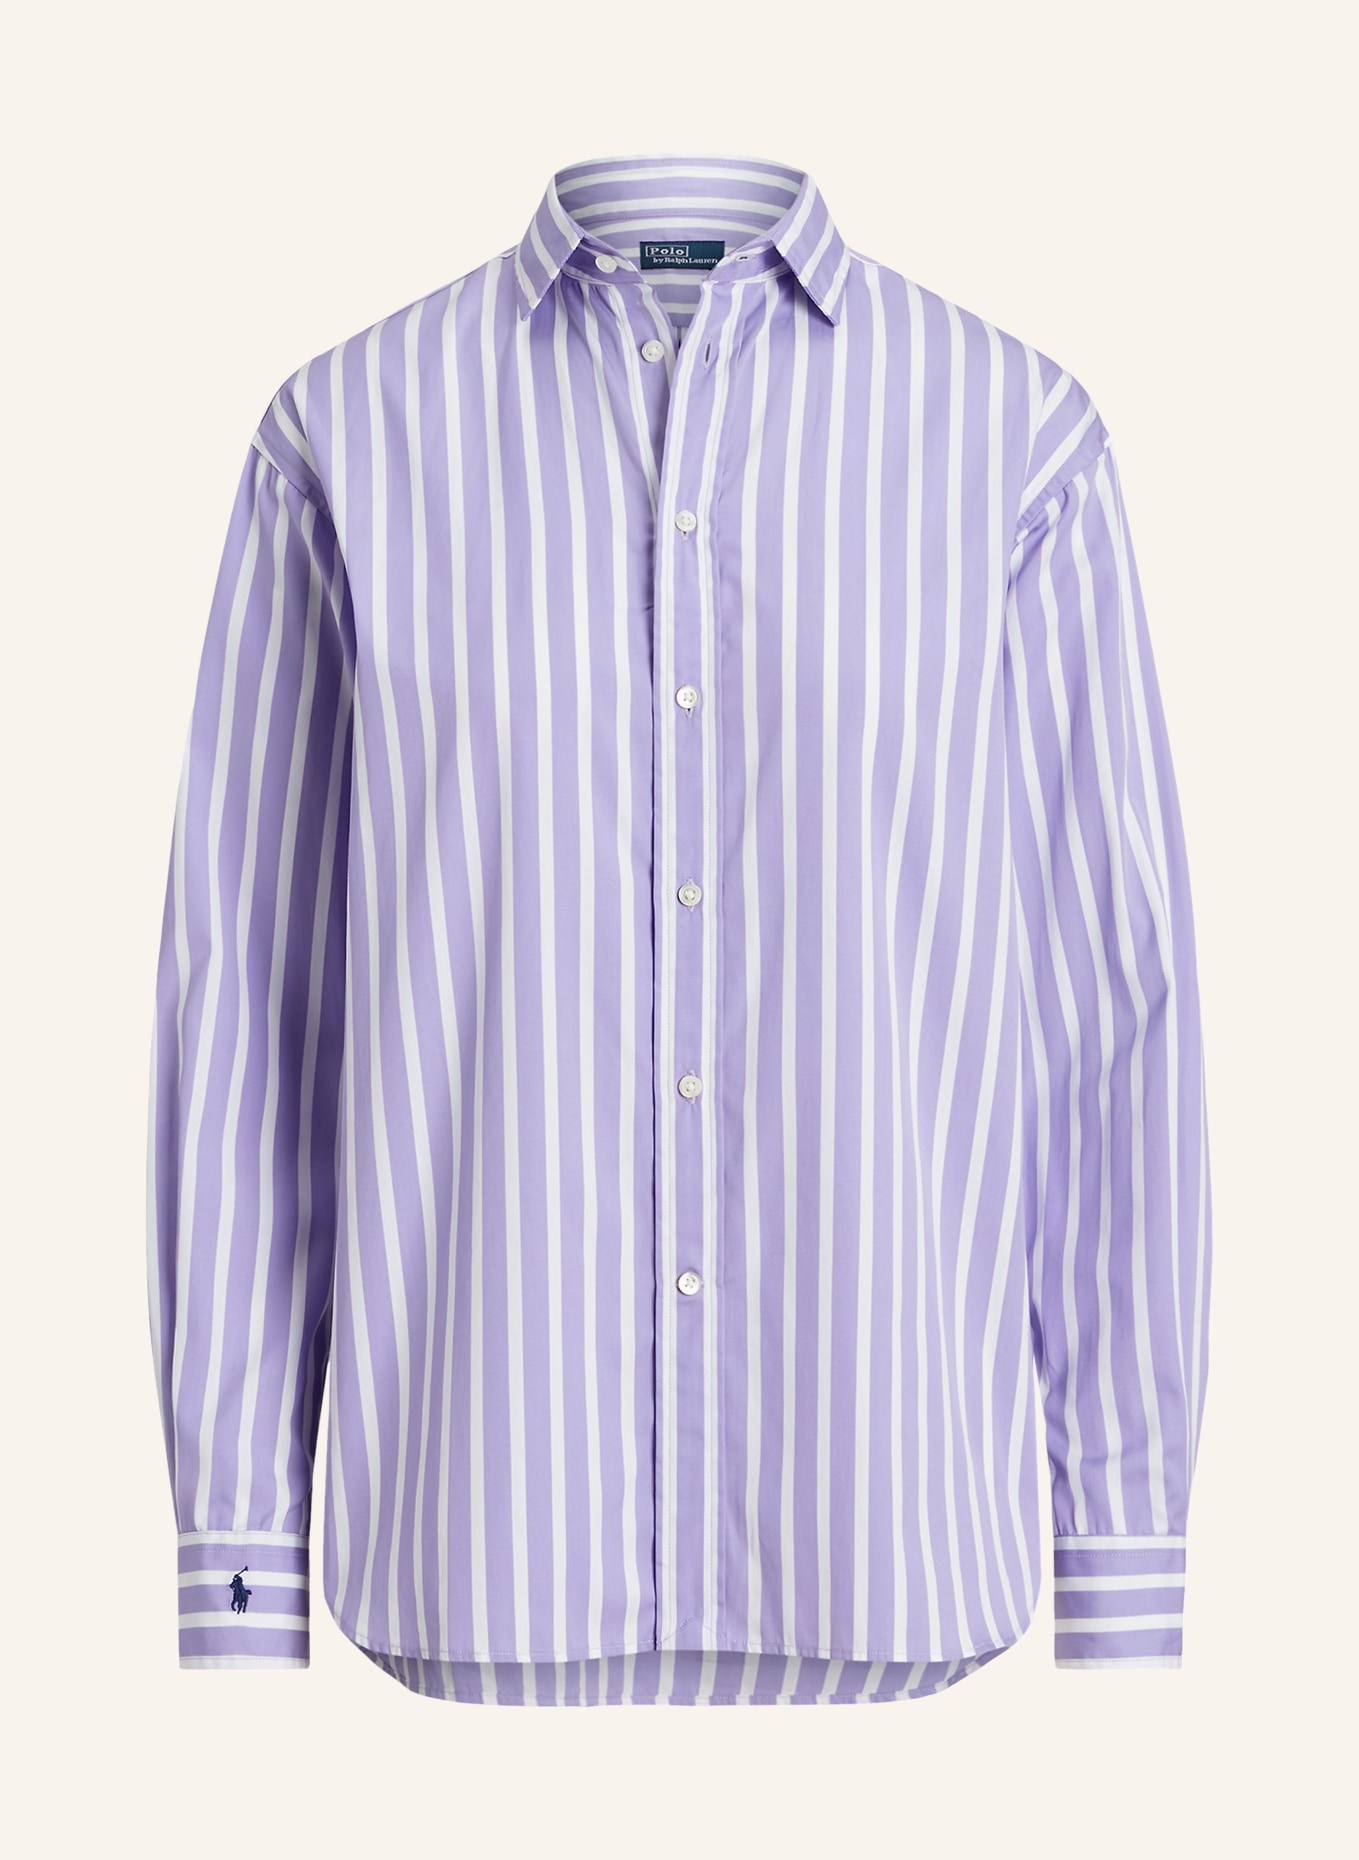 POLO RALPH LAUREN Shirt blouse, Color: PURPLE/ WHITE (Image 1)